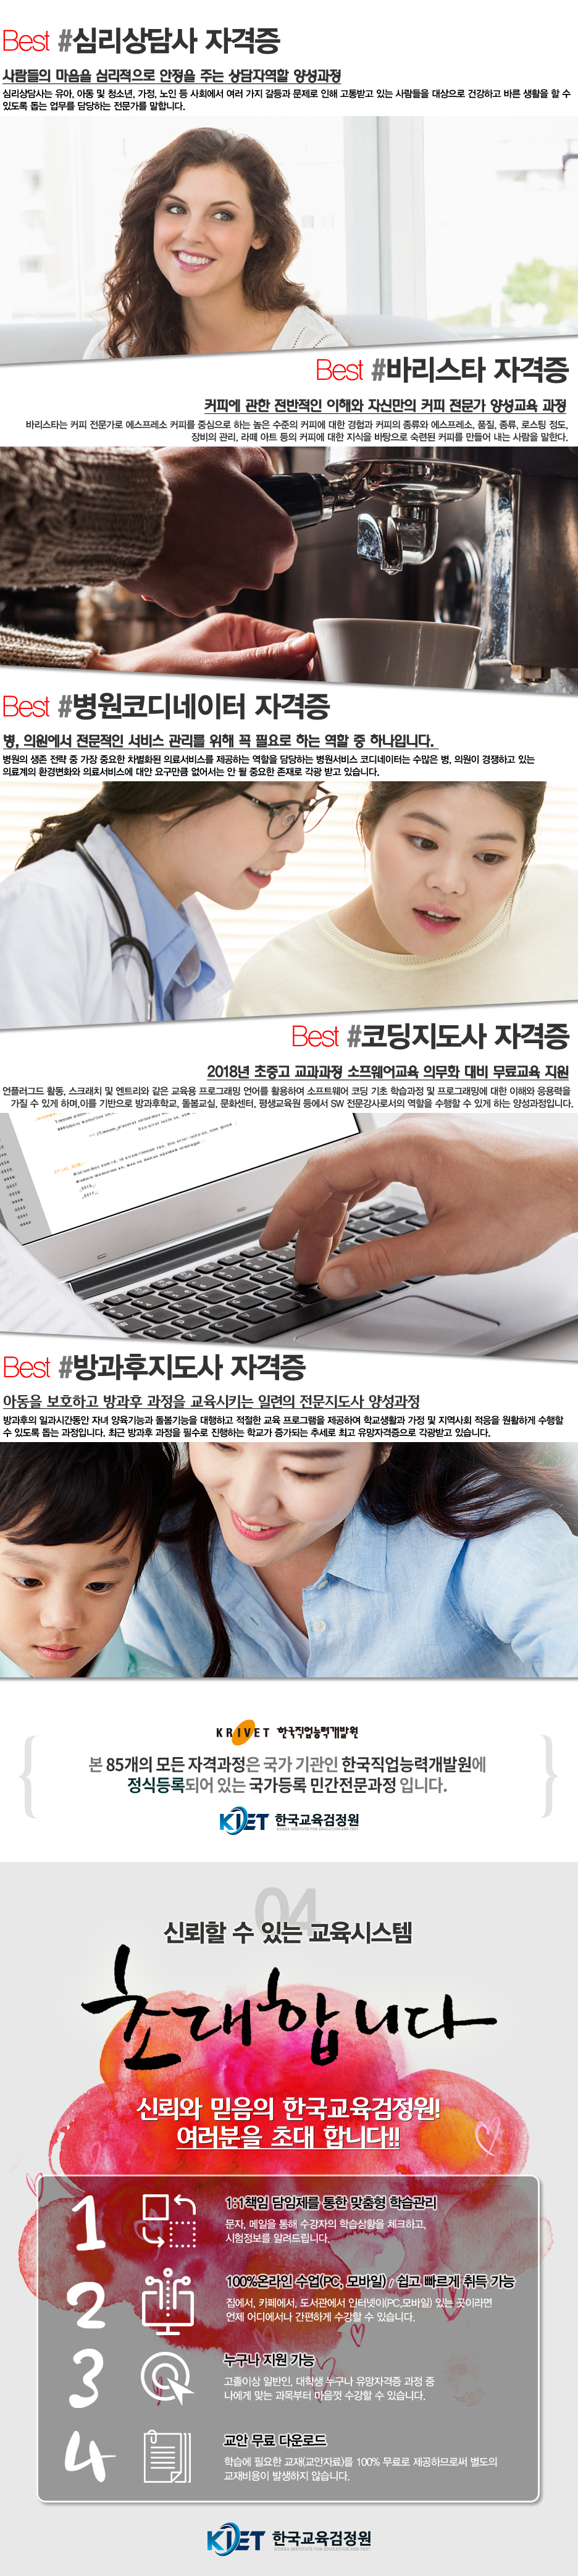 한국교육검정원 랜딩페이지 이미지 삽입